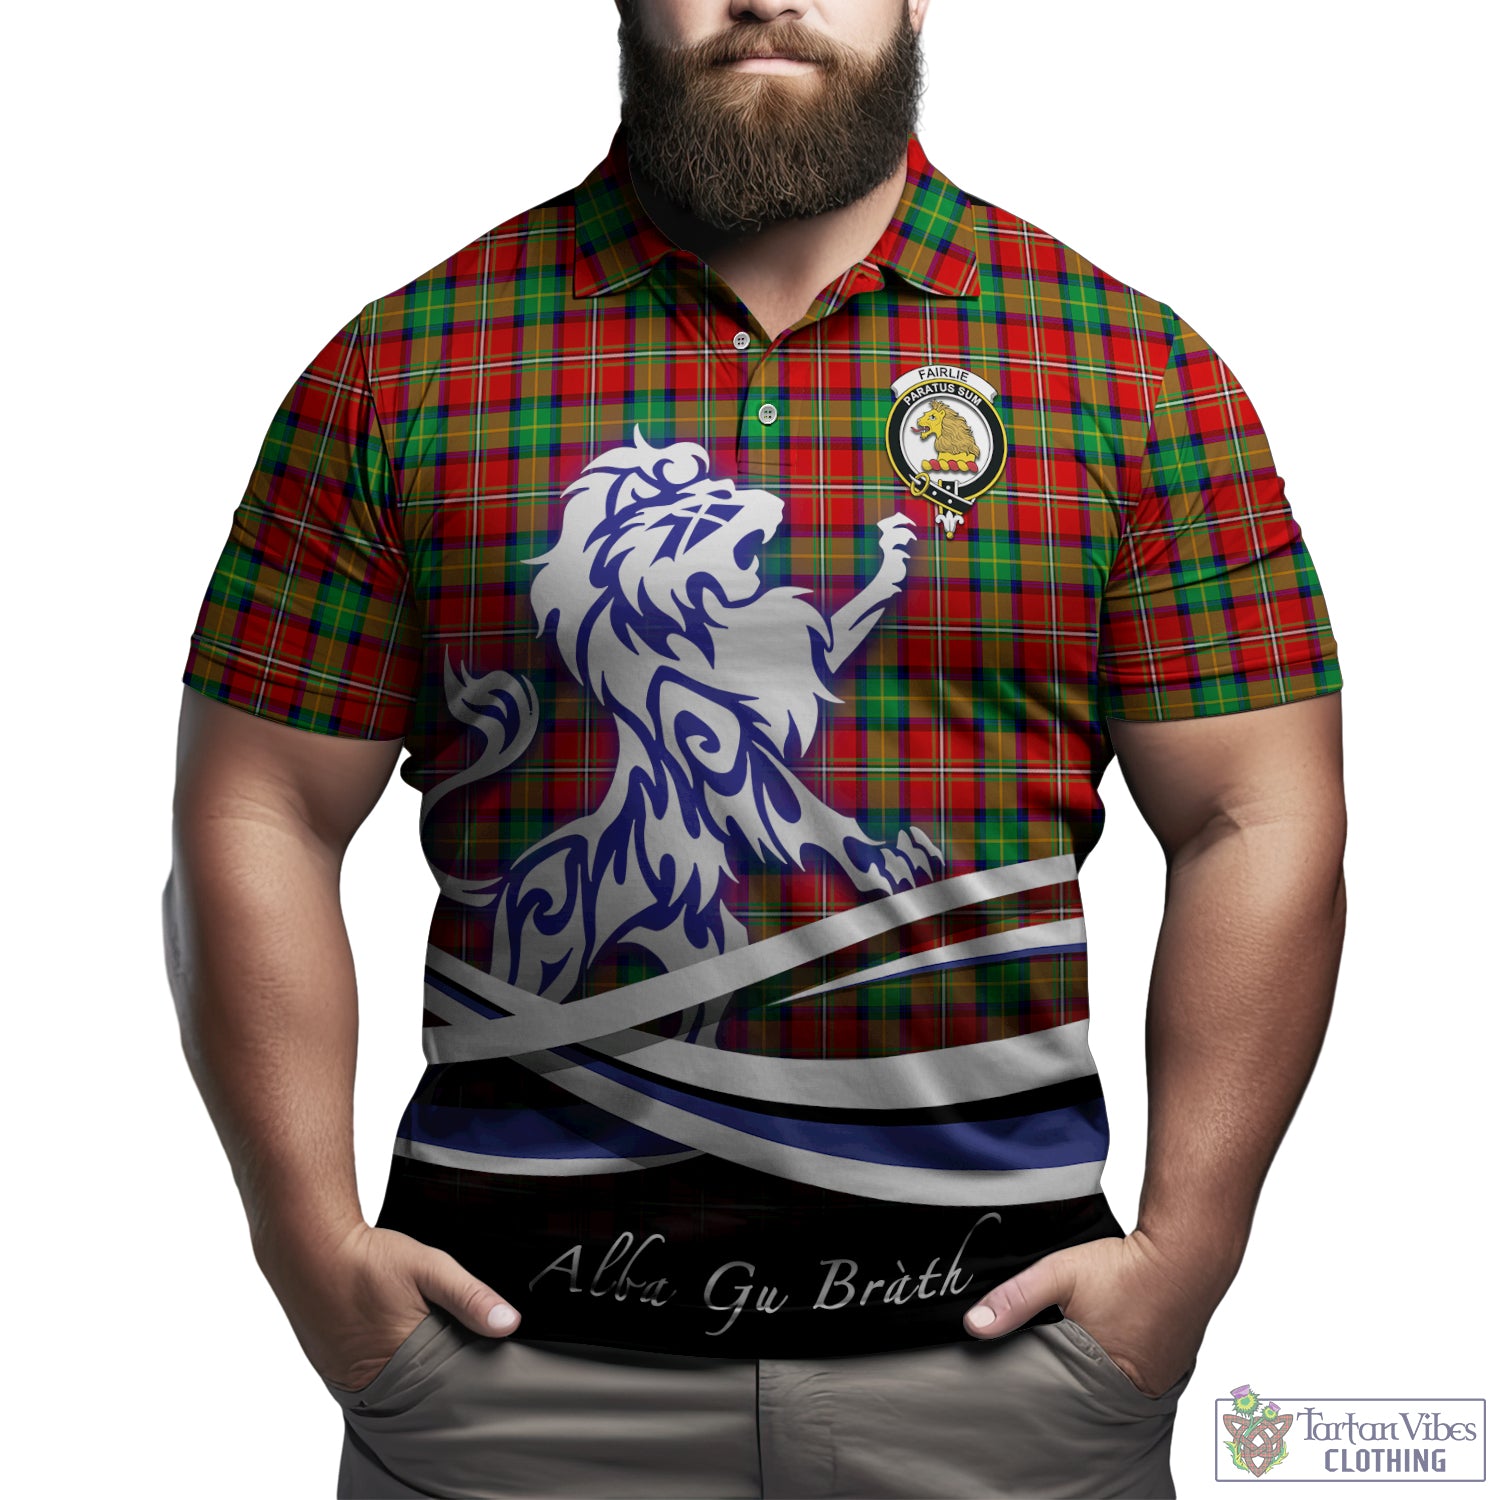 fairlie-modern-tartan-polo-shirt-with-alba-gu-brath-regal-lion-emblem